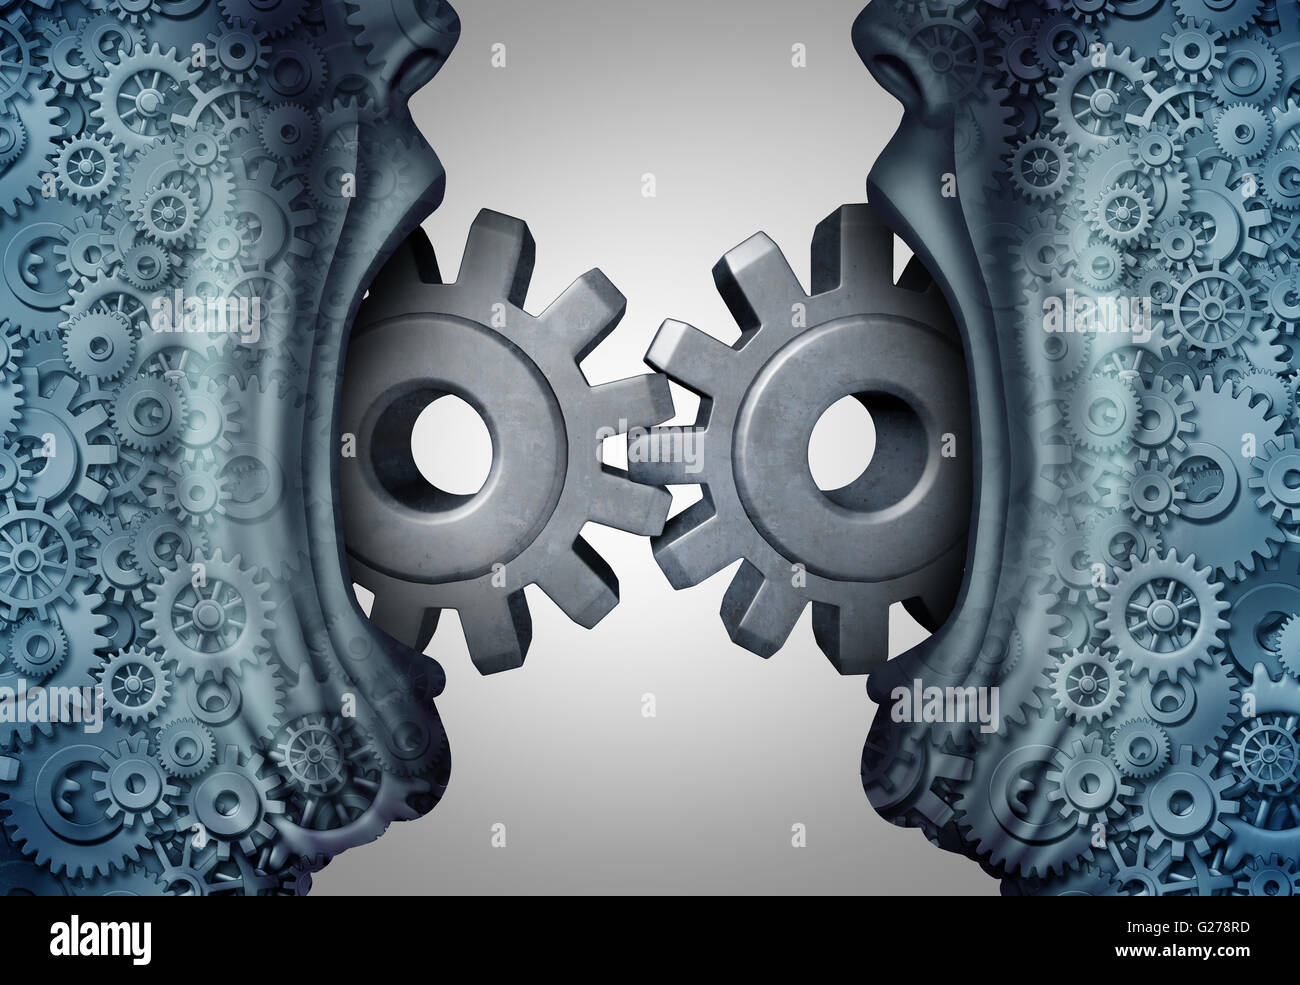 Konzept der Business-Kommunikation und Industrie tauschen Symbol als zwei Personen mit offenen Mündern verbindenden Getriebe und Zahnräder mit 3D Abbildung Elemente zu kommunizieren. Stockfoto